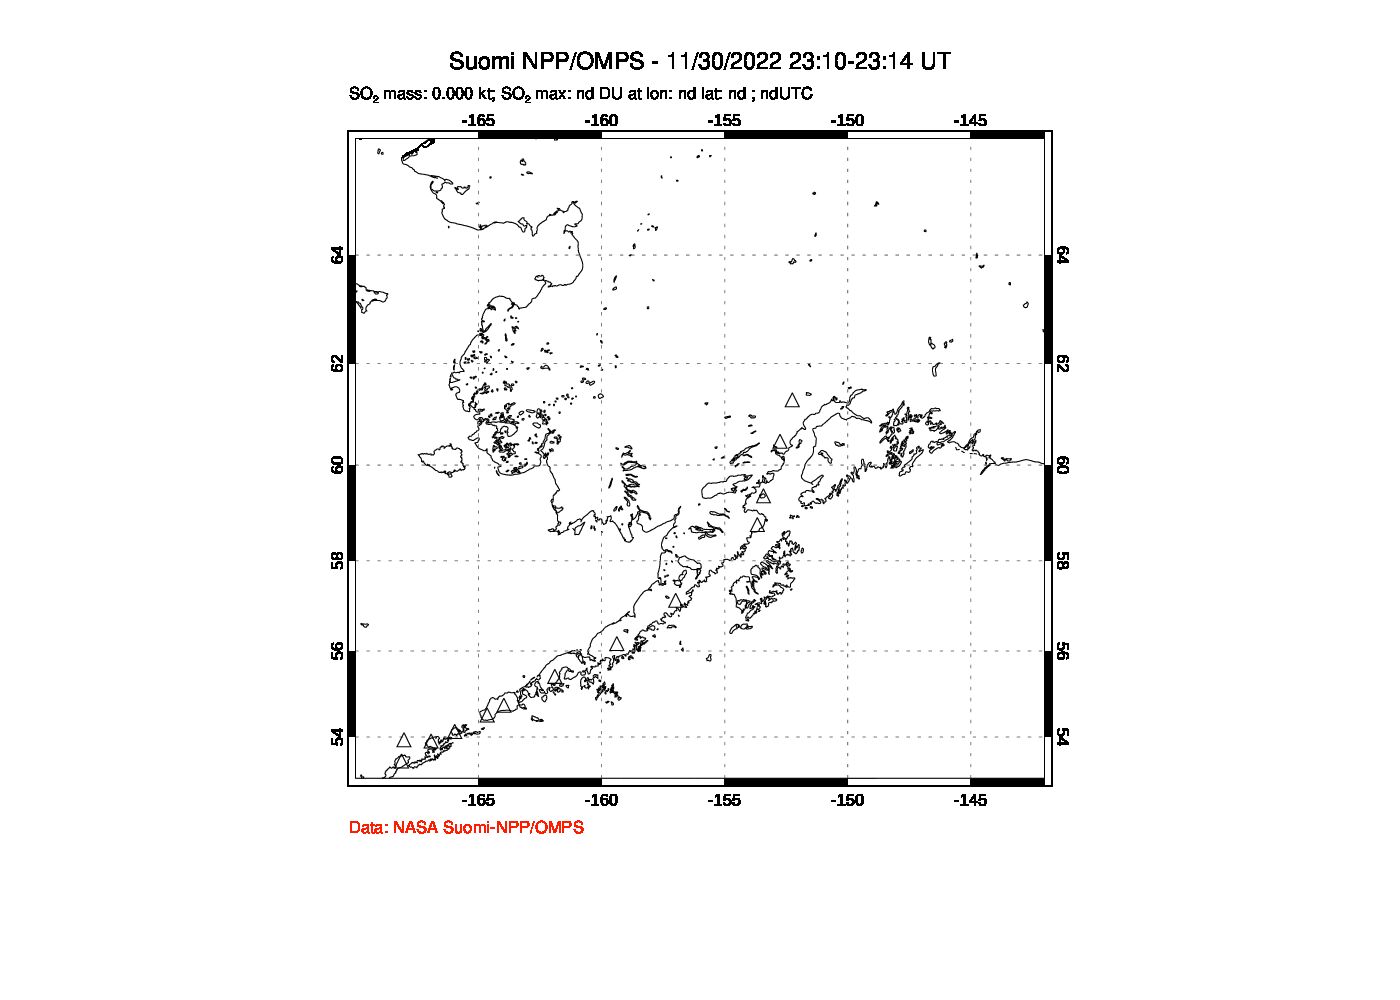 A sulfur dioxide image over Alaska, USA on Nov 30, 2022.